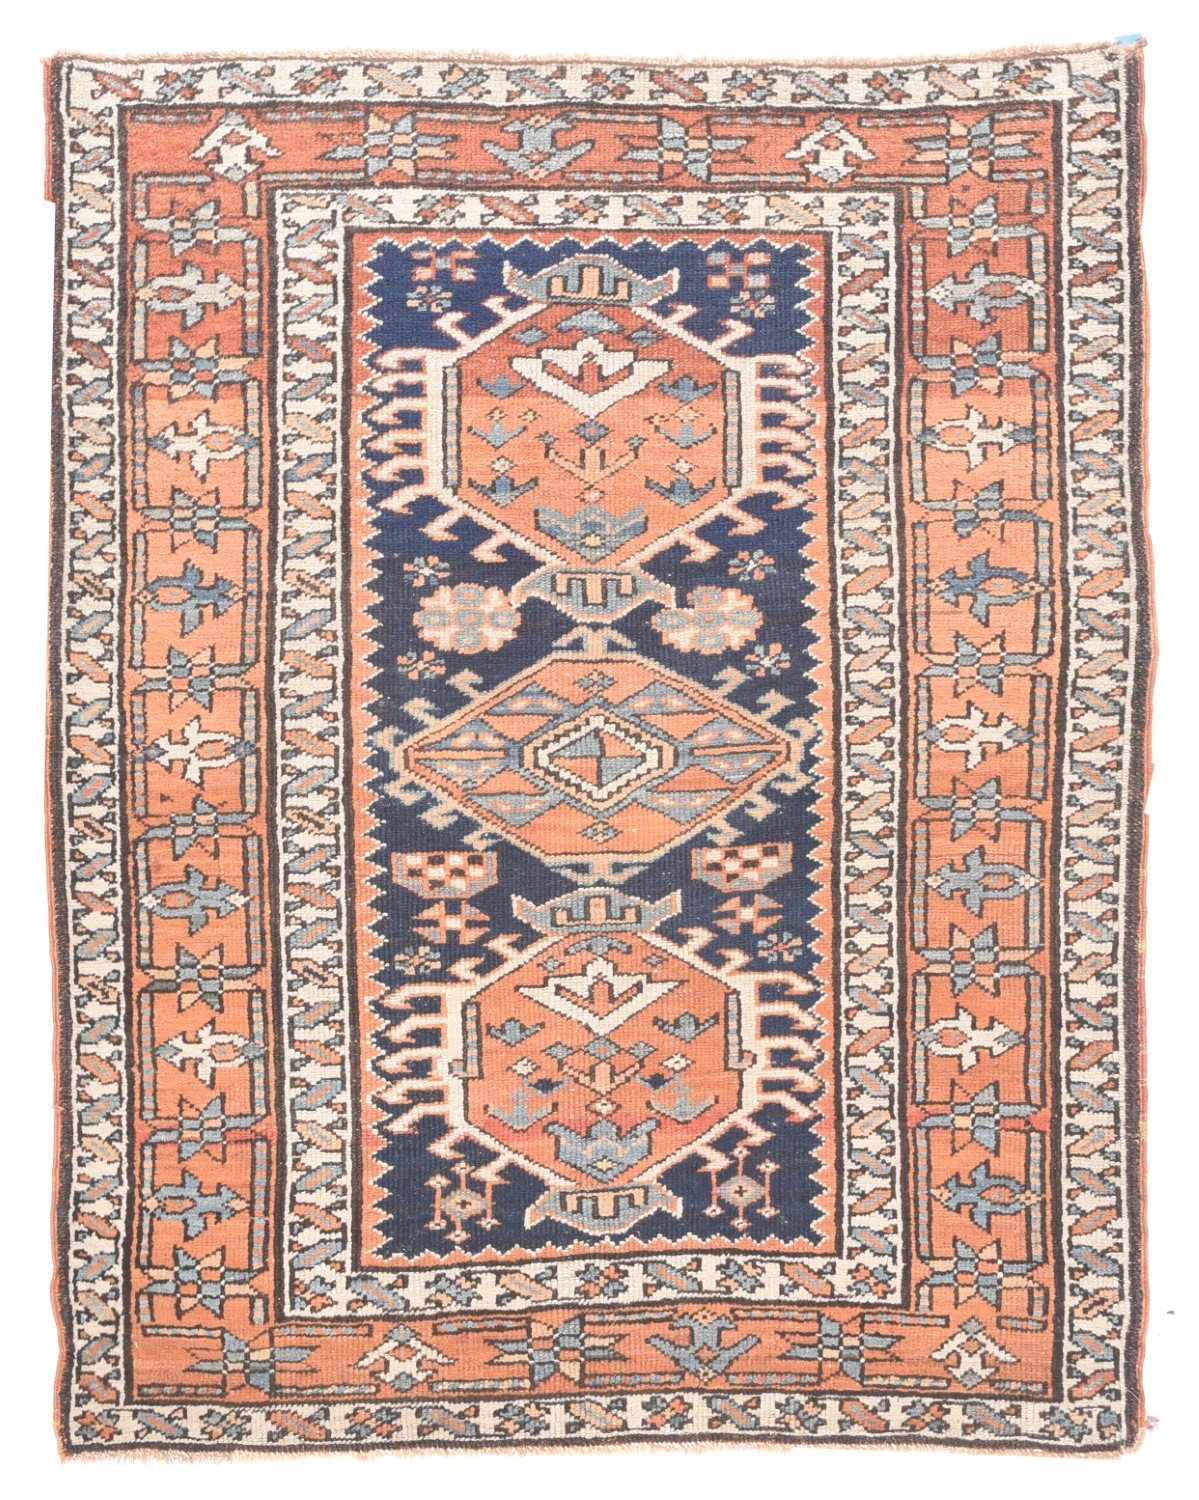 Antique Persian Heriz/Karajeh, Size 3'4" X 4'3"